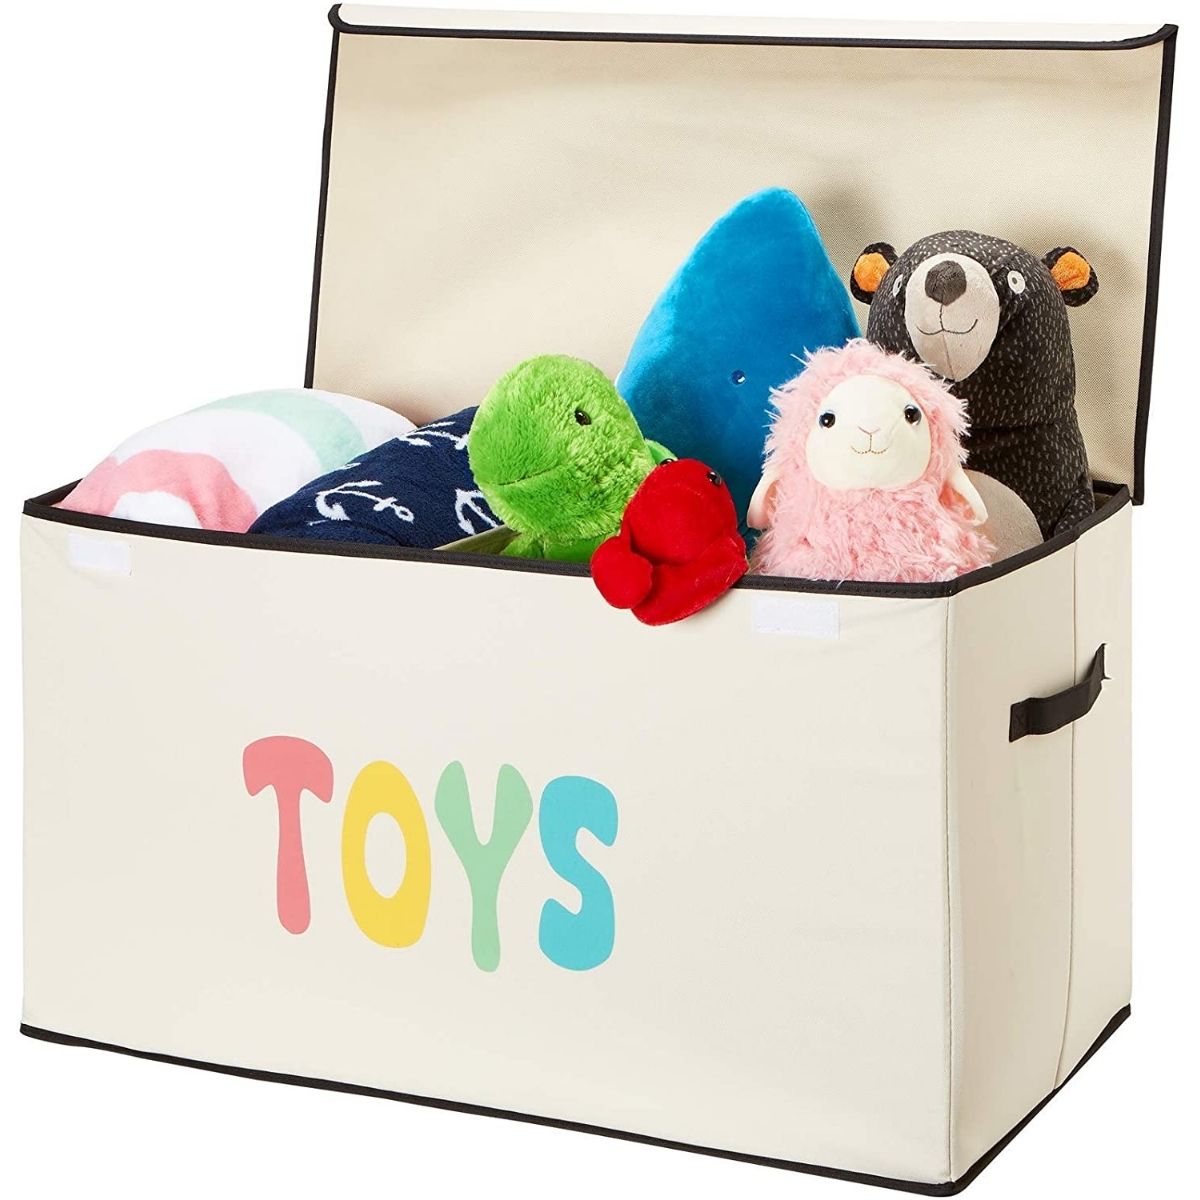 Woffit Toy Storage Organizer Chest for Kids